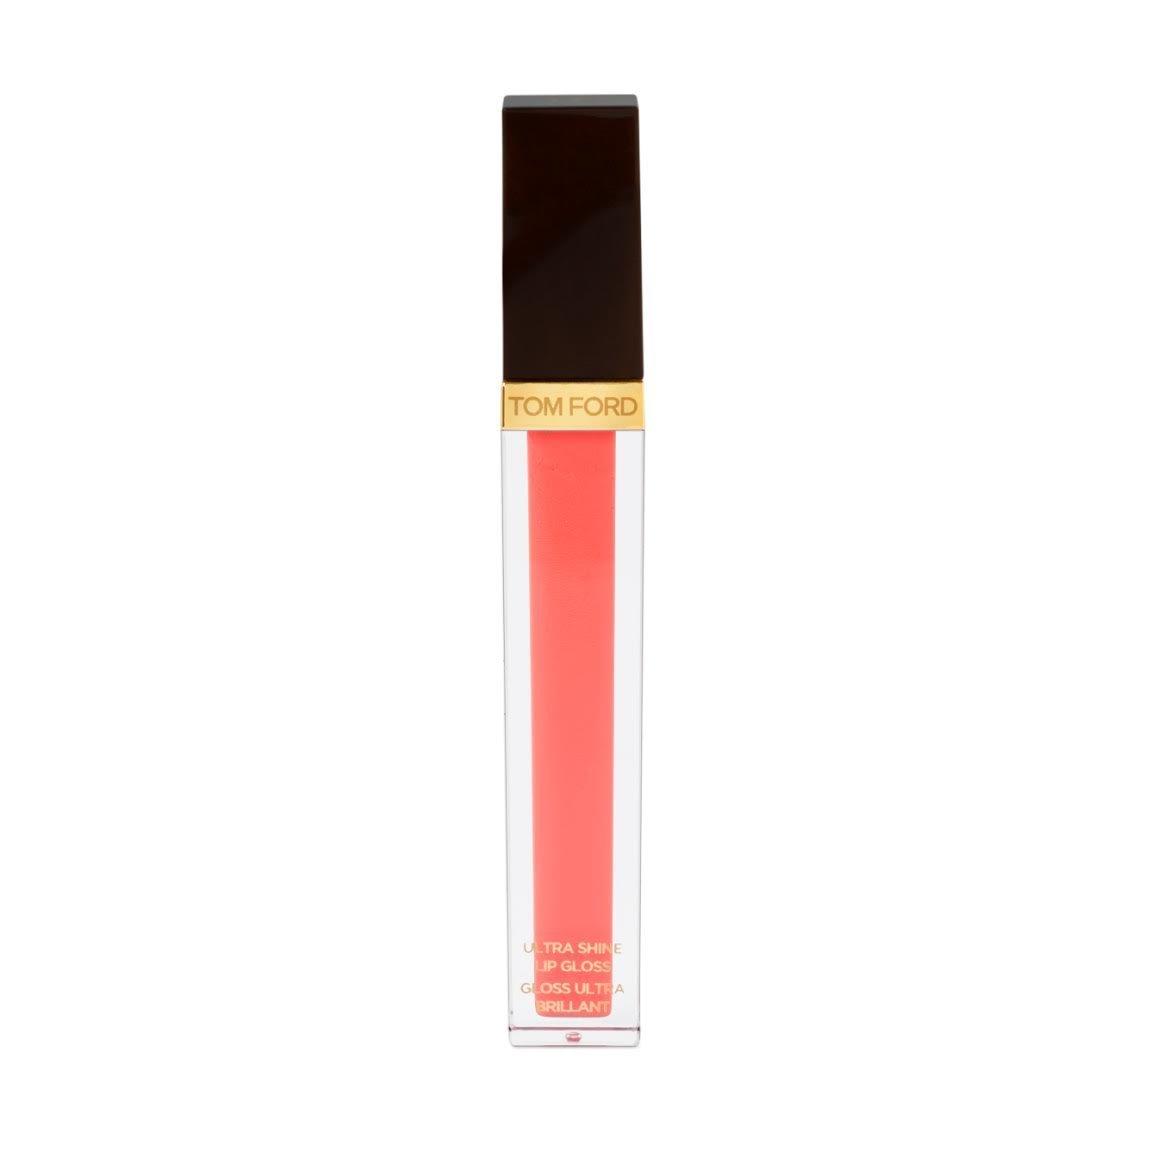 Tom Ford Ultra Shine Lip Gloss Peach Absolut 07